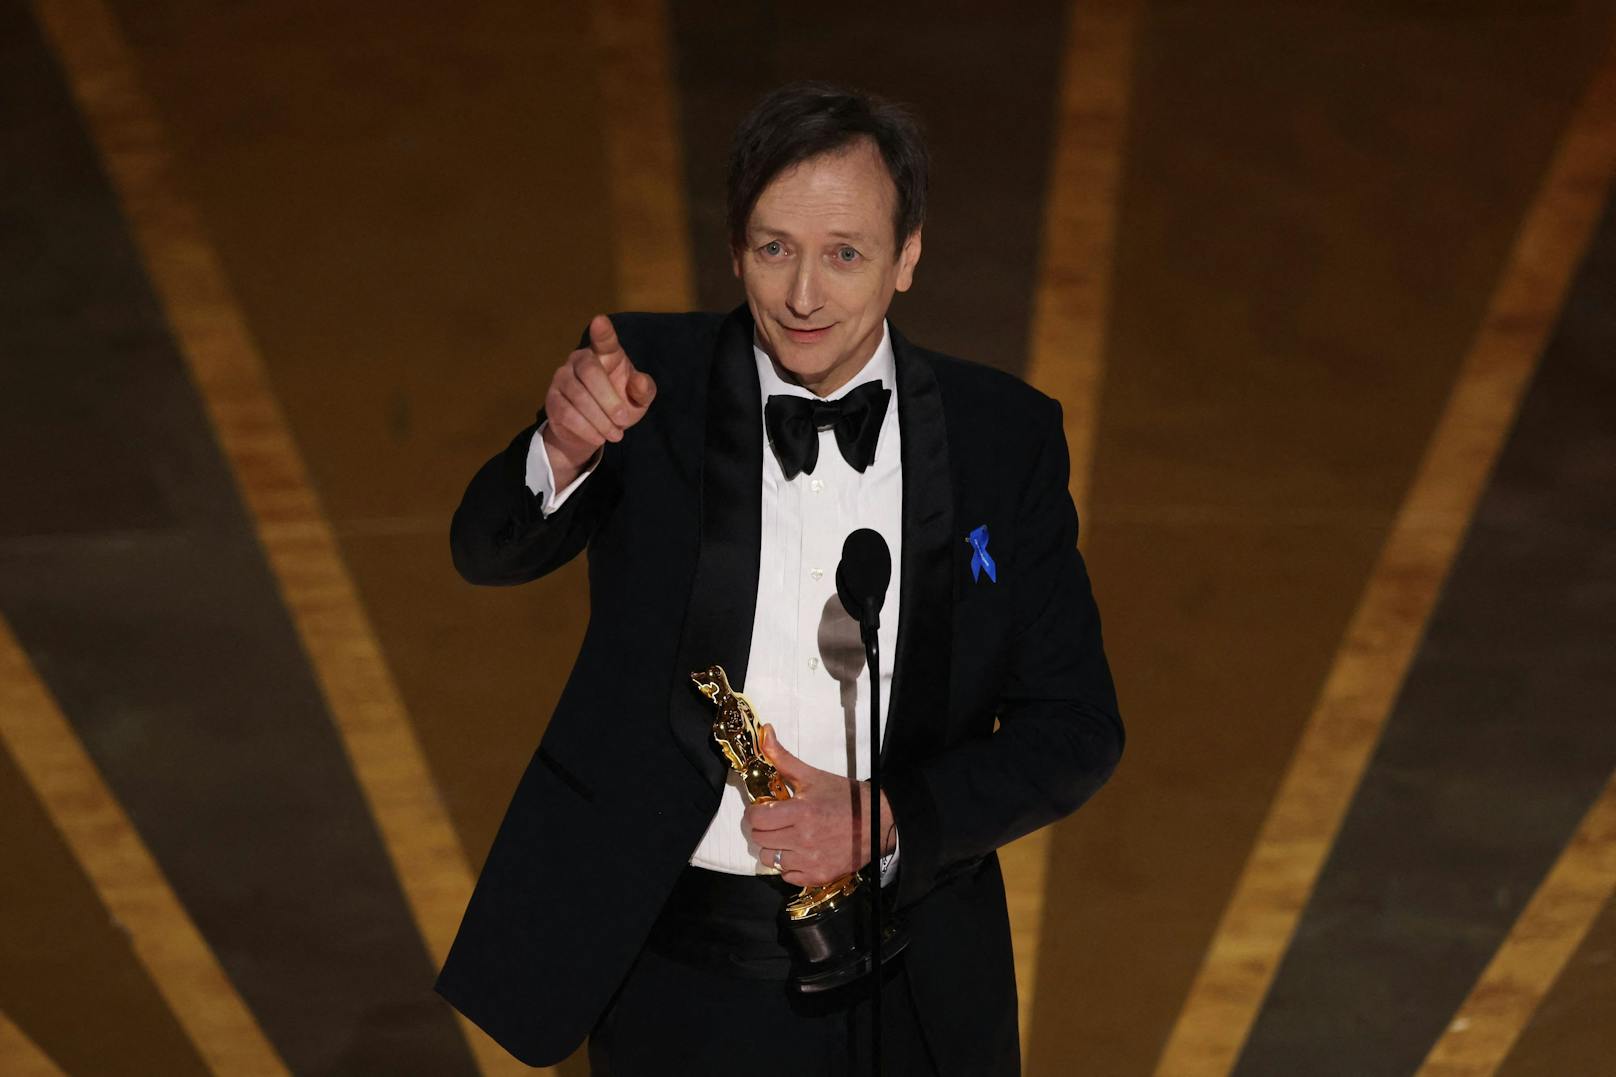 Volker Bertelmann gewinnt den Oscar für "Beste Filmmusik". ("Im Westen nichts Neues")